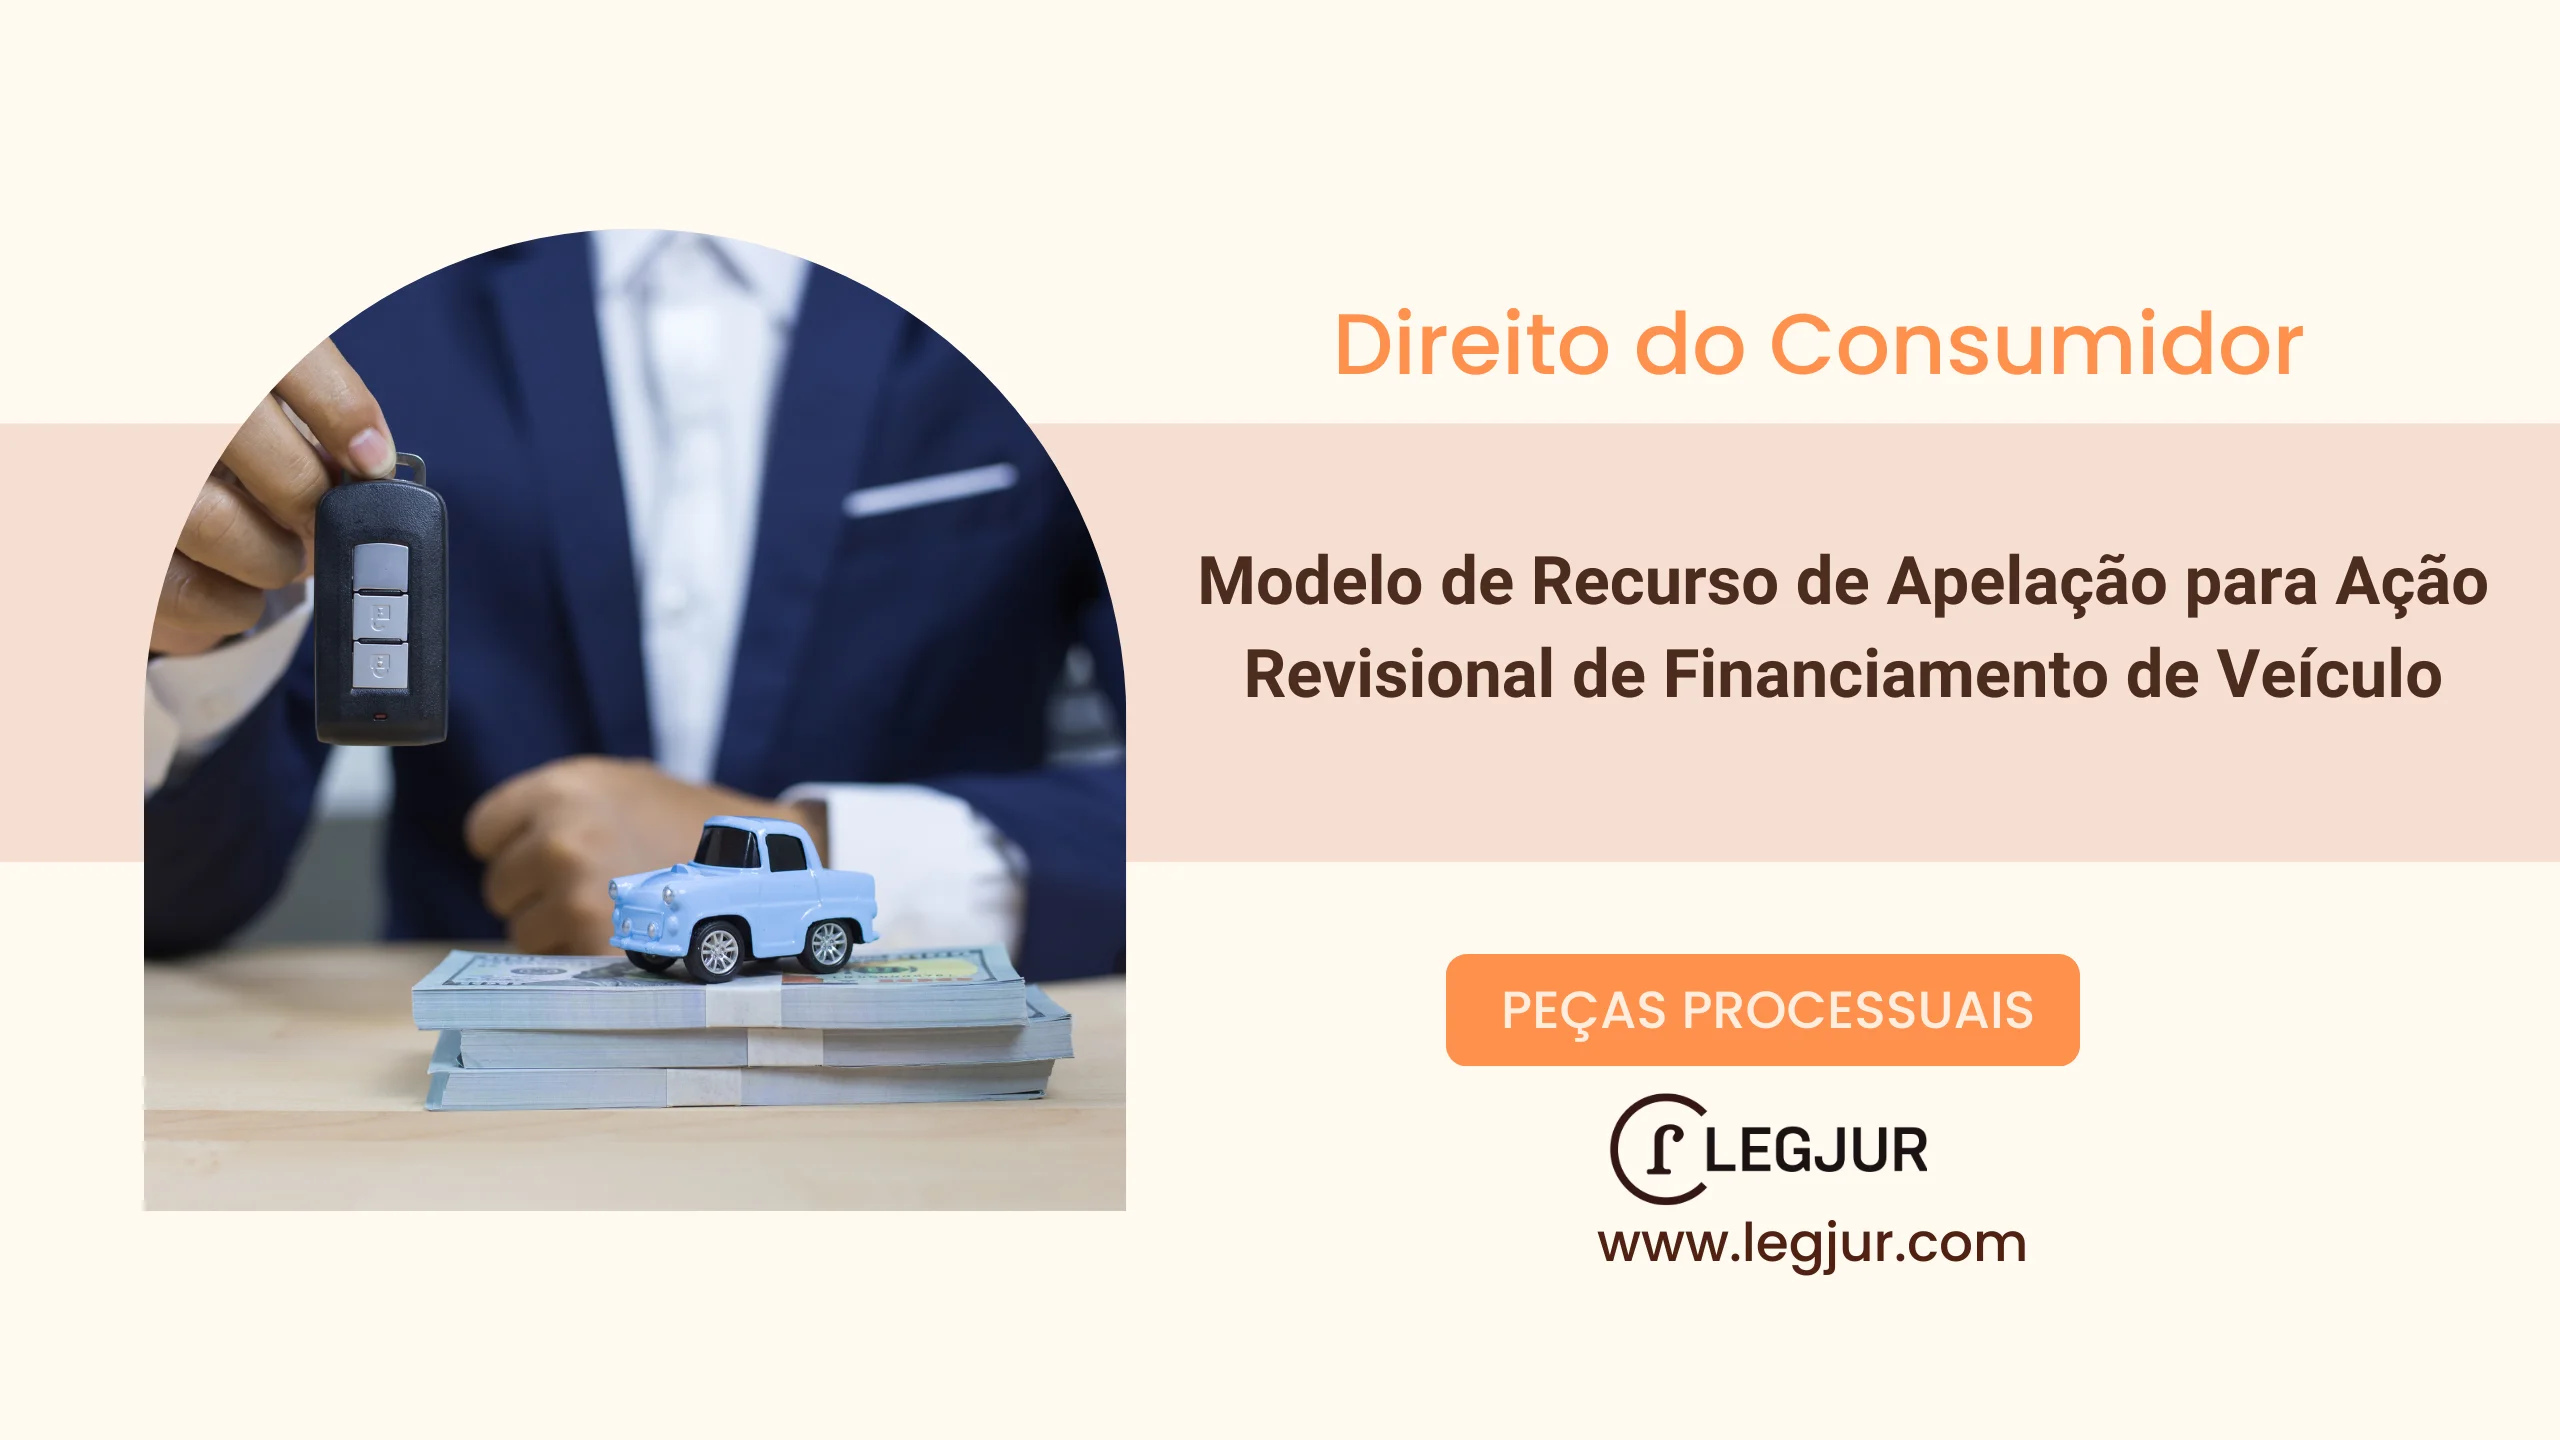 Modelo de Recurso de Apelação para Ação Revisional de Financiamento de Veículo